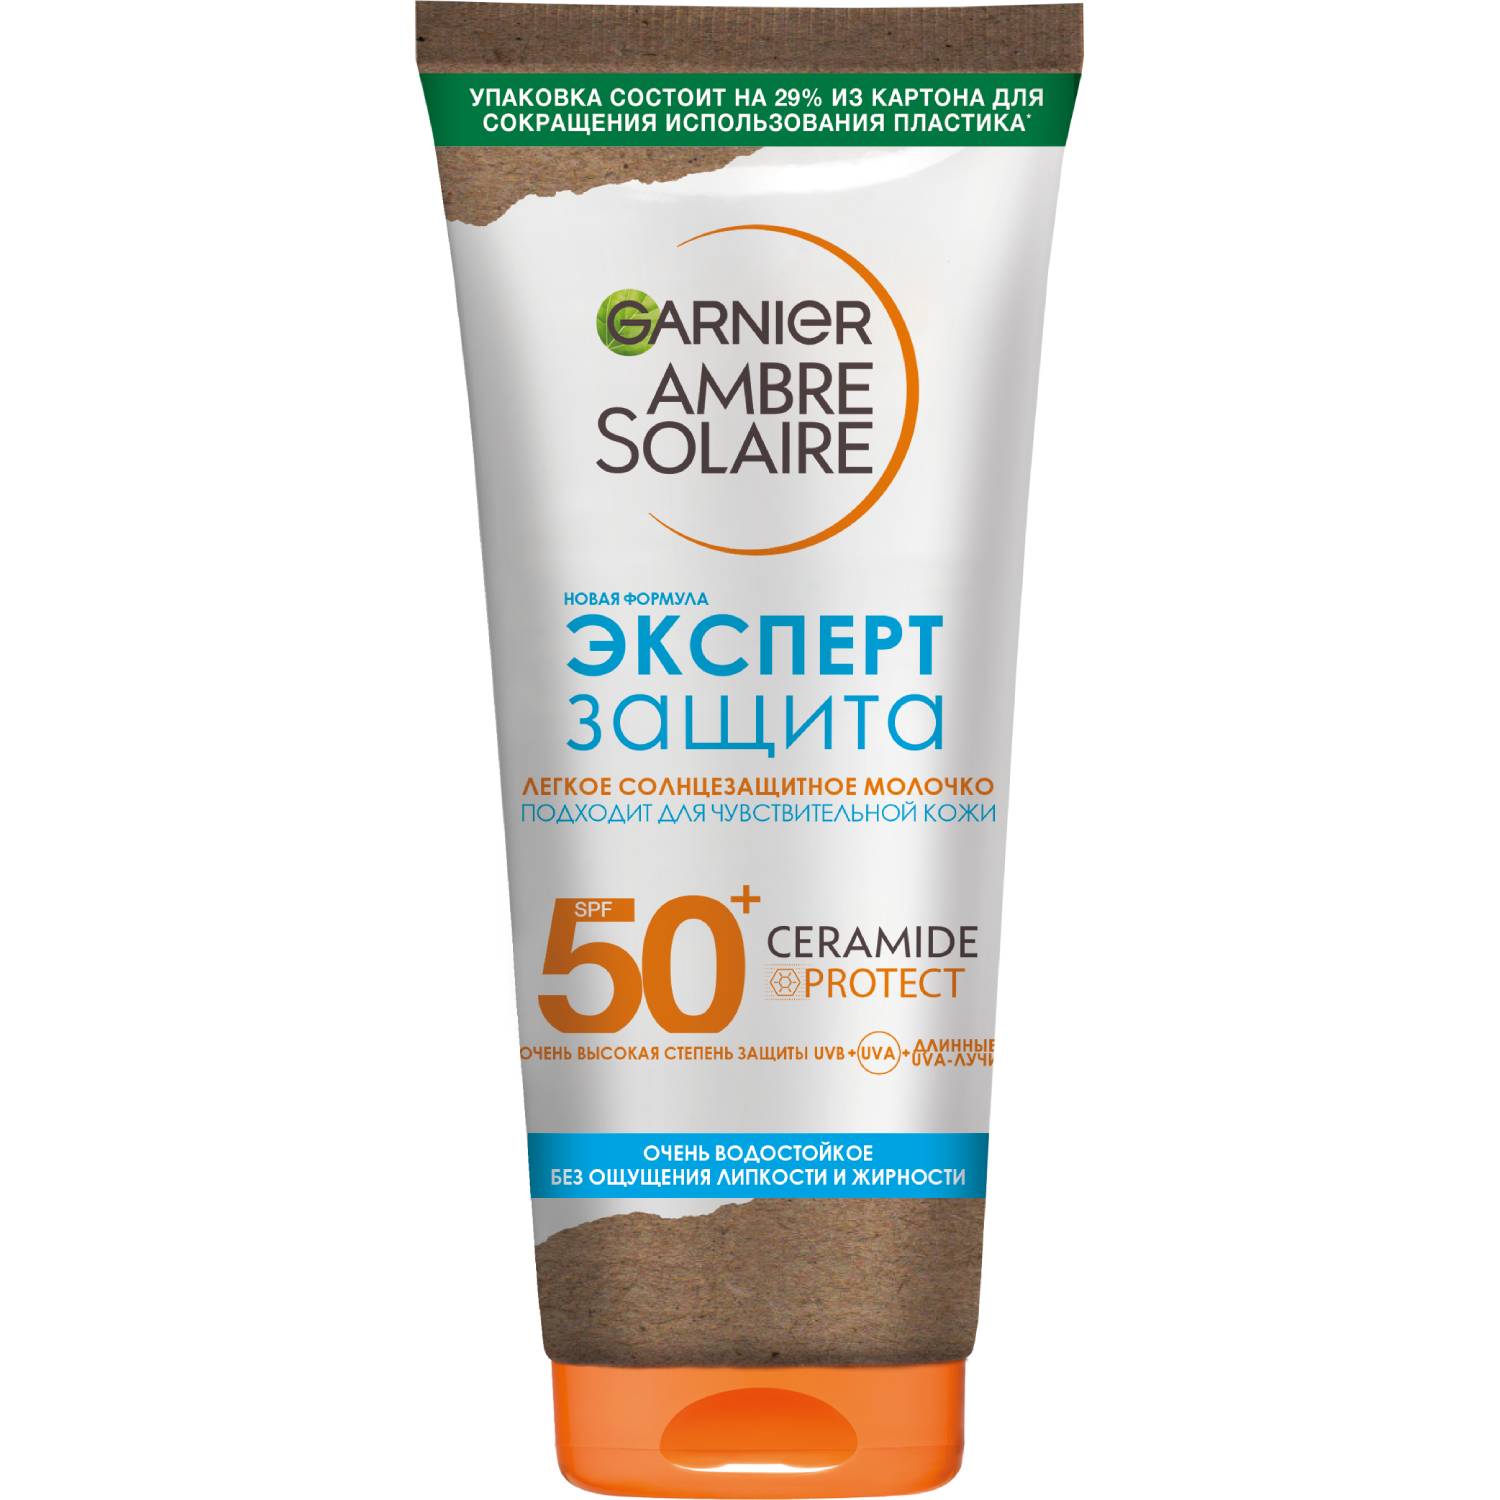 Garnier Легкое солнцезащитное водостойкое молочко для лица и тела Эксперт защита SPF50+, 175 мл (Garnier, Amber solaire)